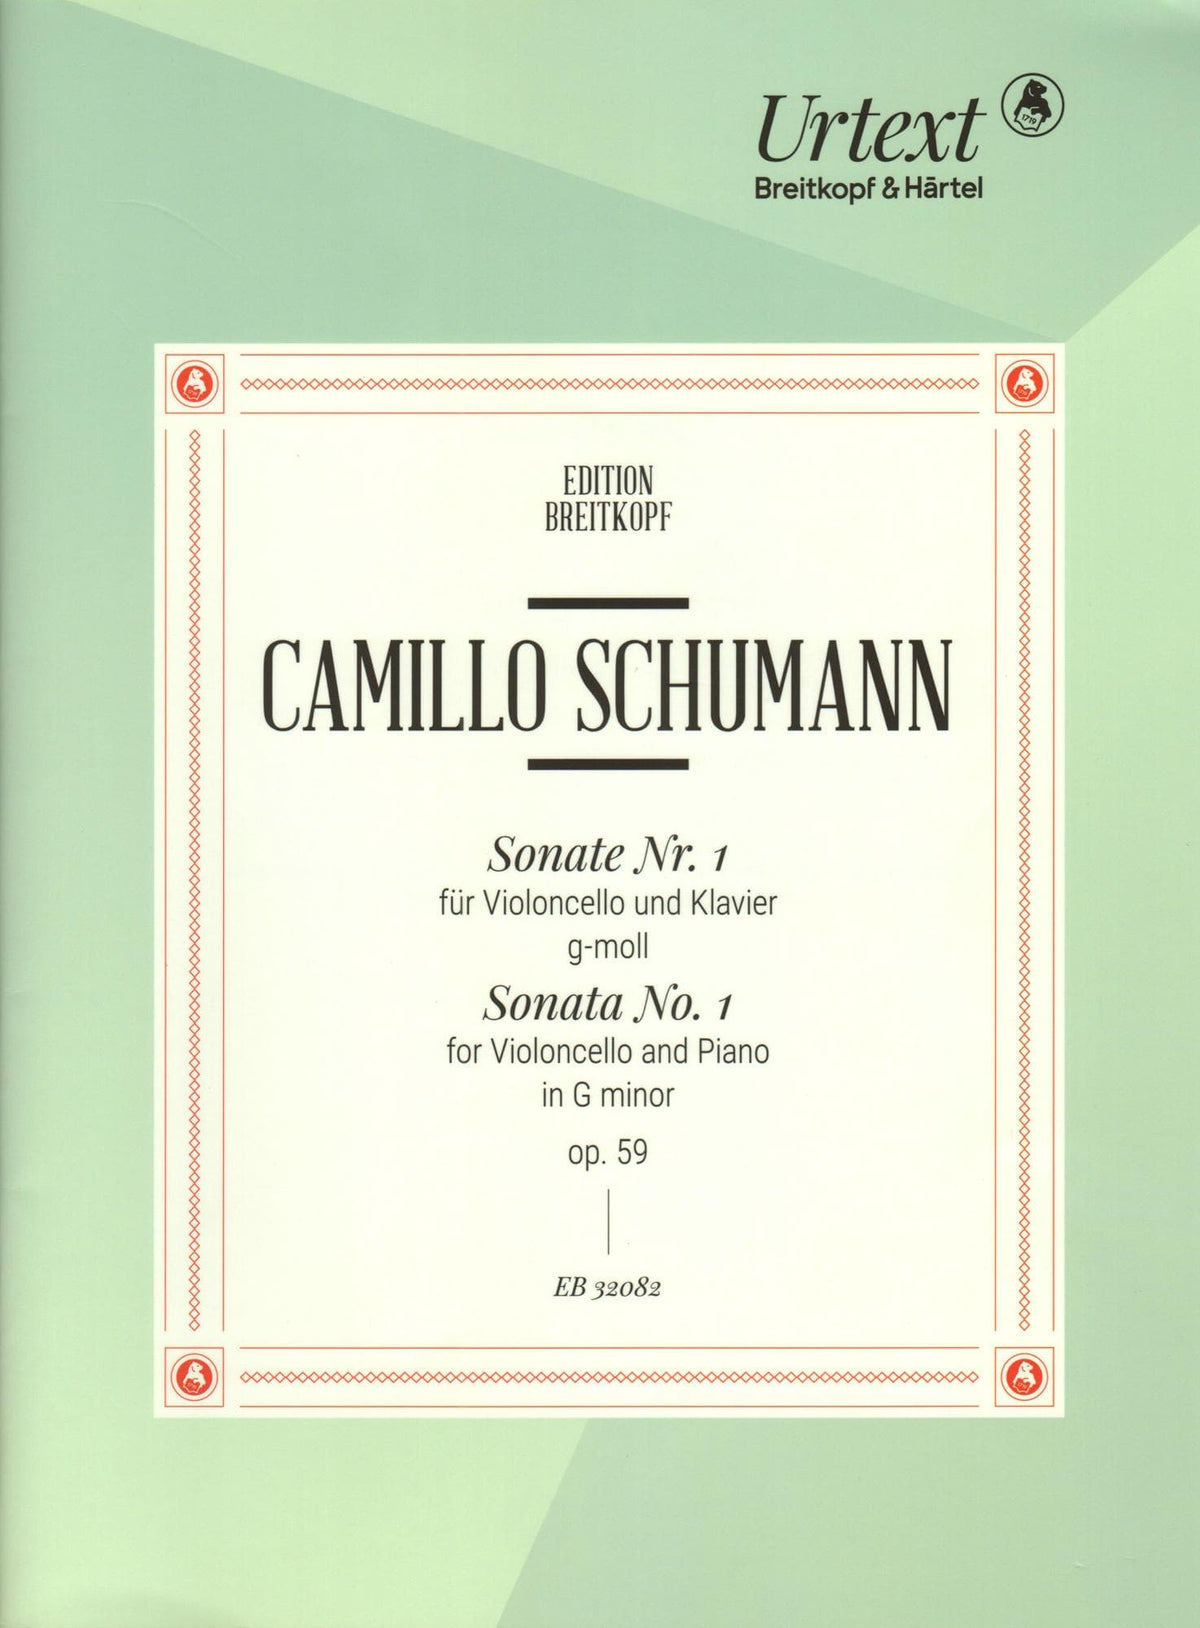 Schumann, Camillo - Sonata No. 1 in G minor, Op. 59 - for Cello and Piano - Breitkopf & Hartel URTEXT